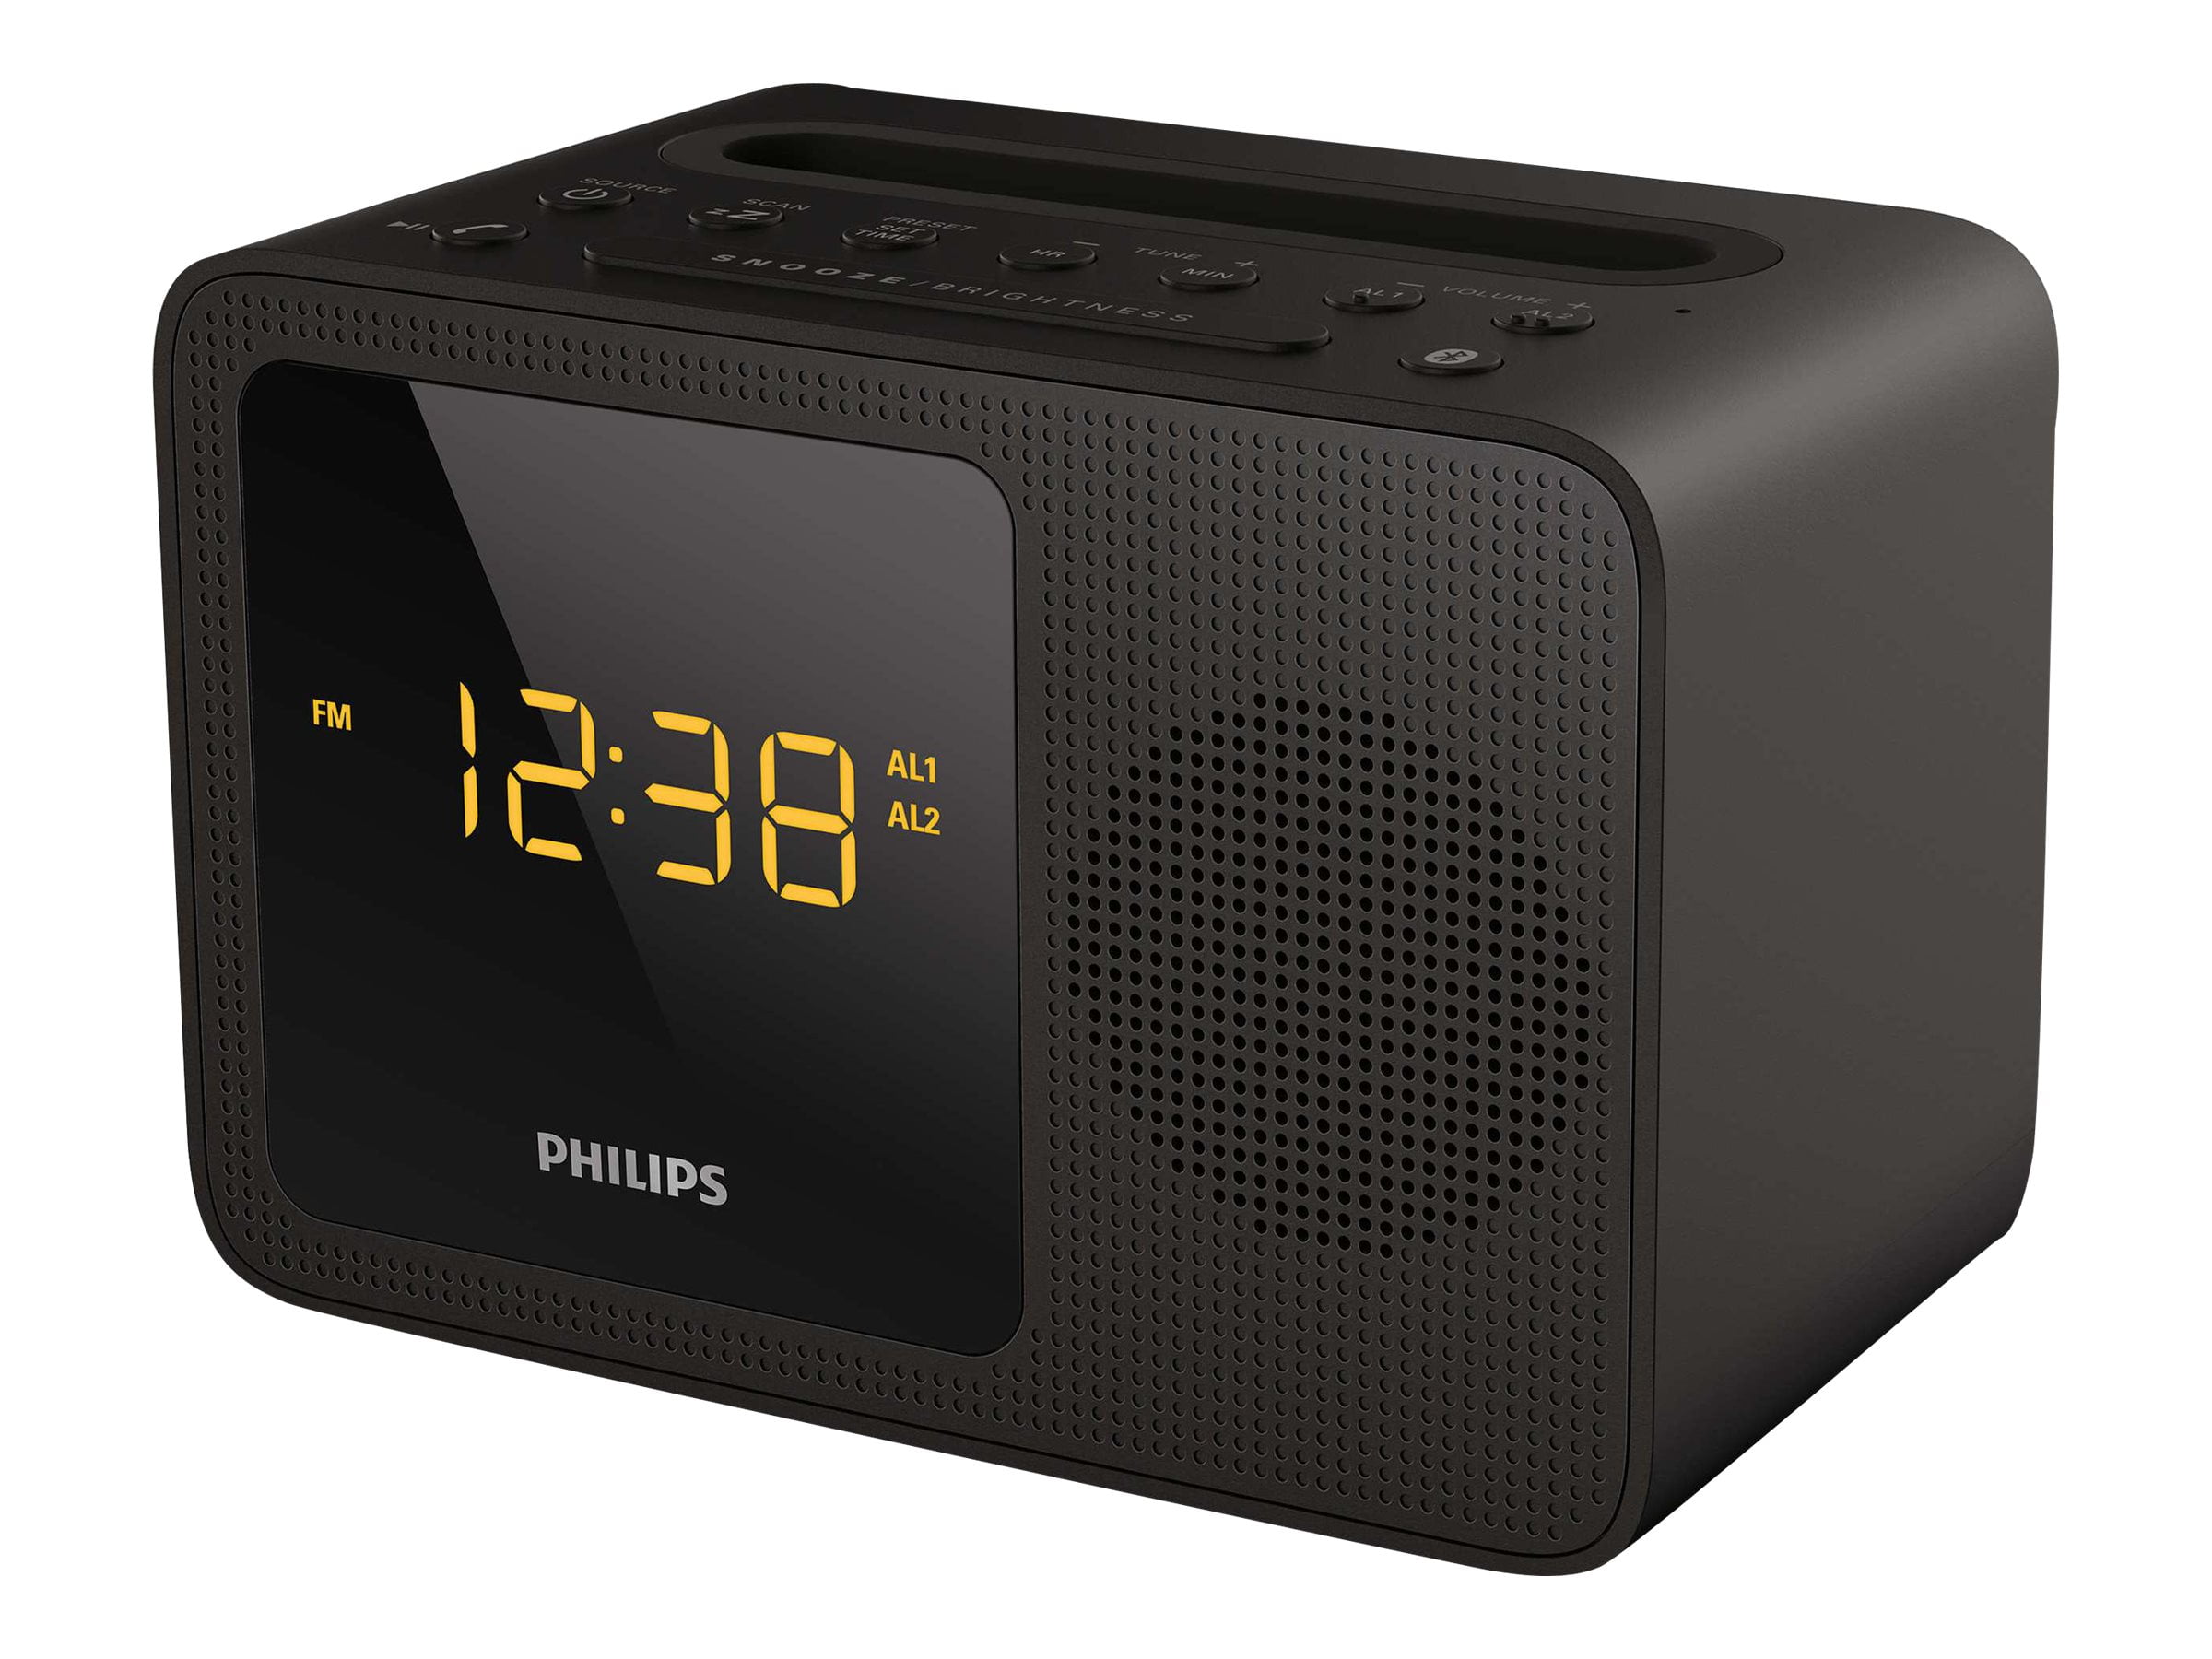 Flikkeren Gewond raken Visser Philips AJT5300 - Clock radio with Android / Apple Dock cradle - Walmart.com